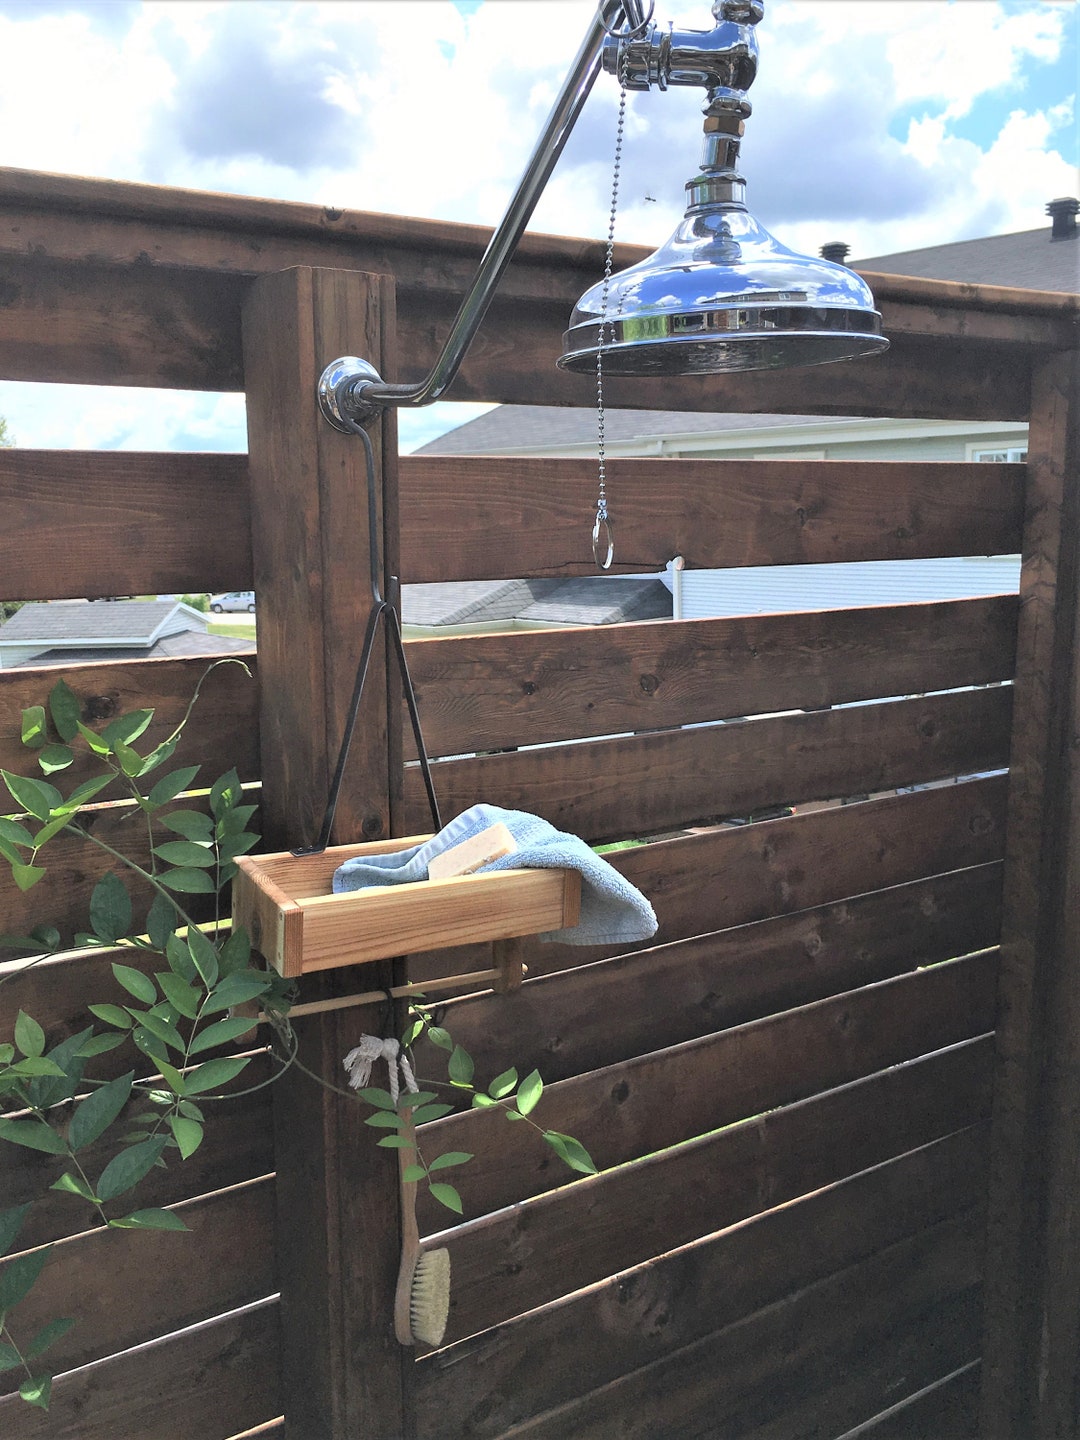 Simply Easy DIY: DIY Cedar Shower Caddie